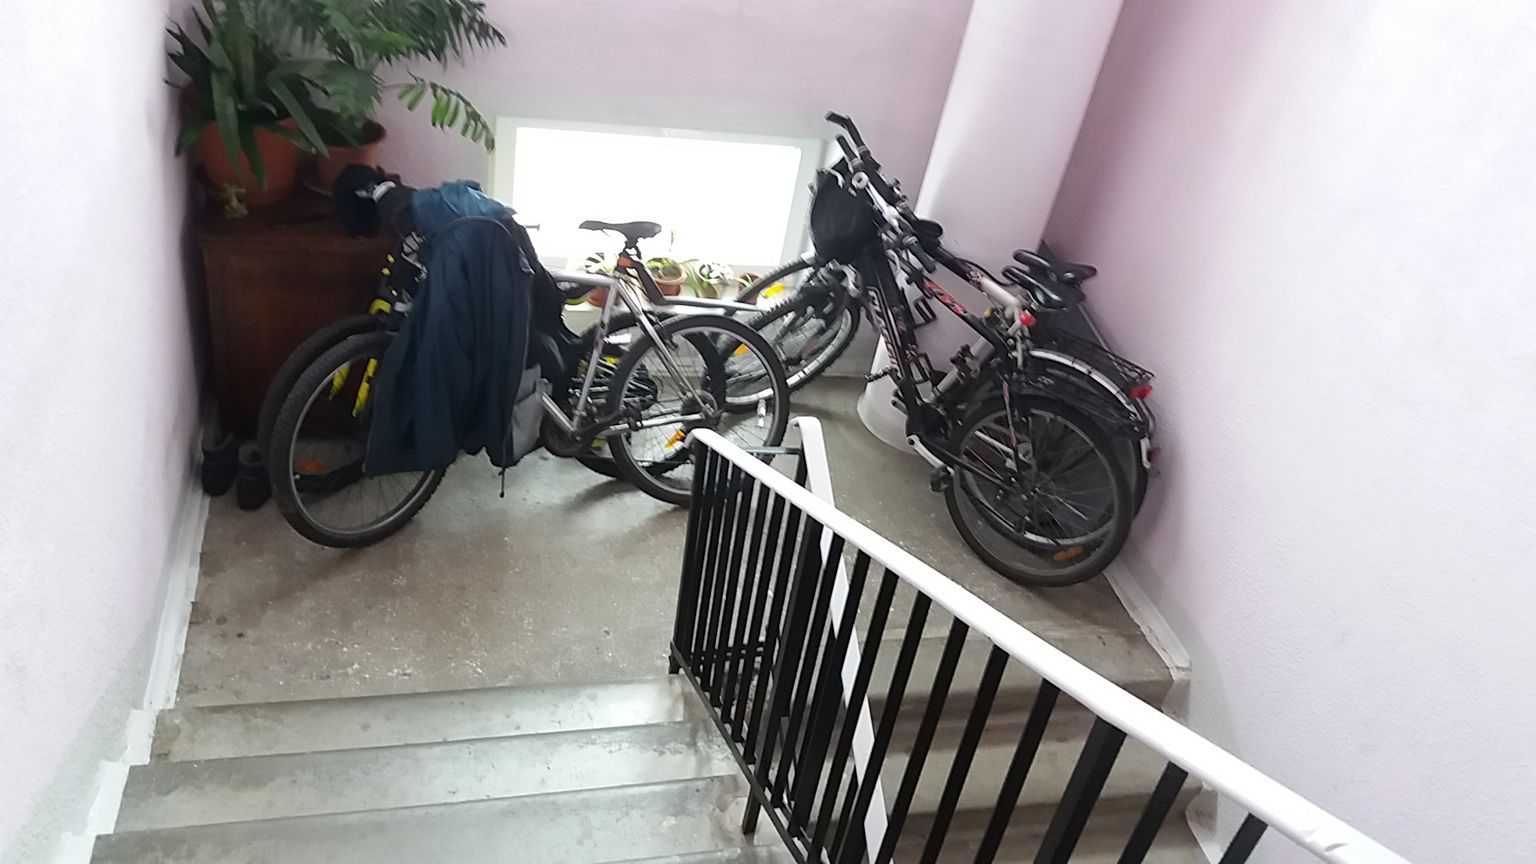 Tihti hoitakse kortermaja koridoris nii jalgrattaid, lapsevankreid kui lilli.